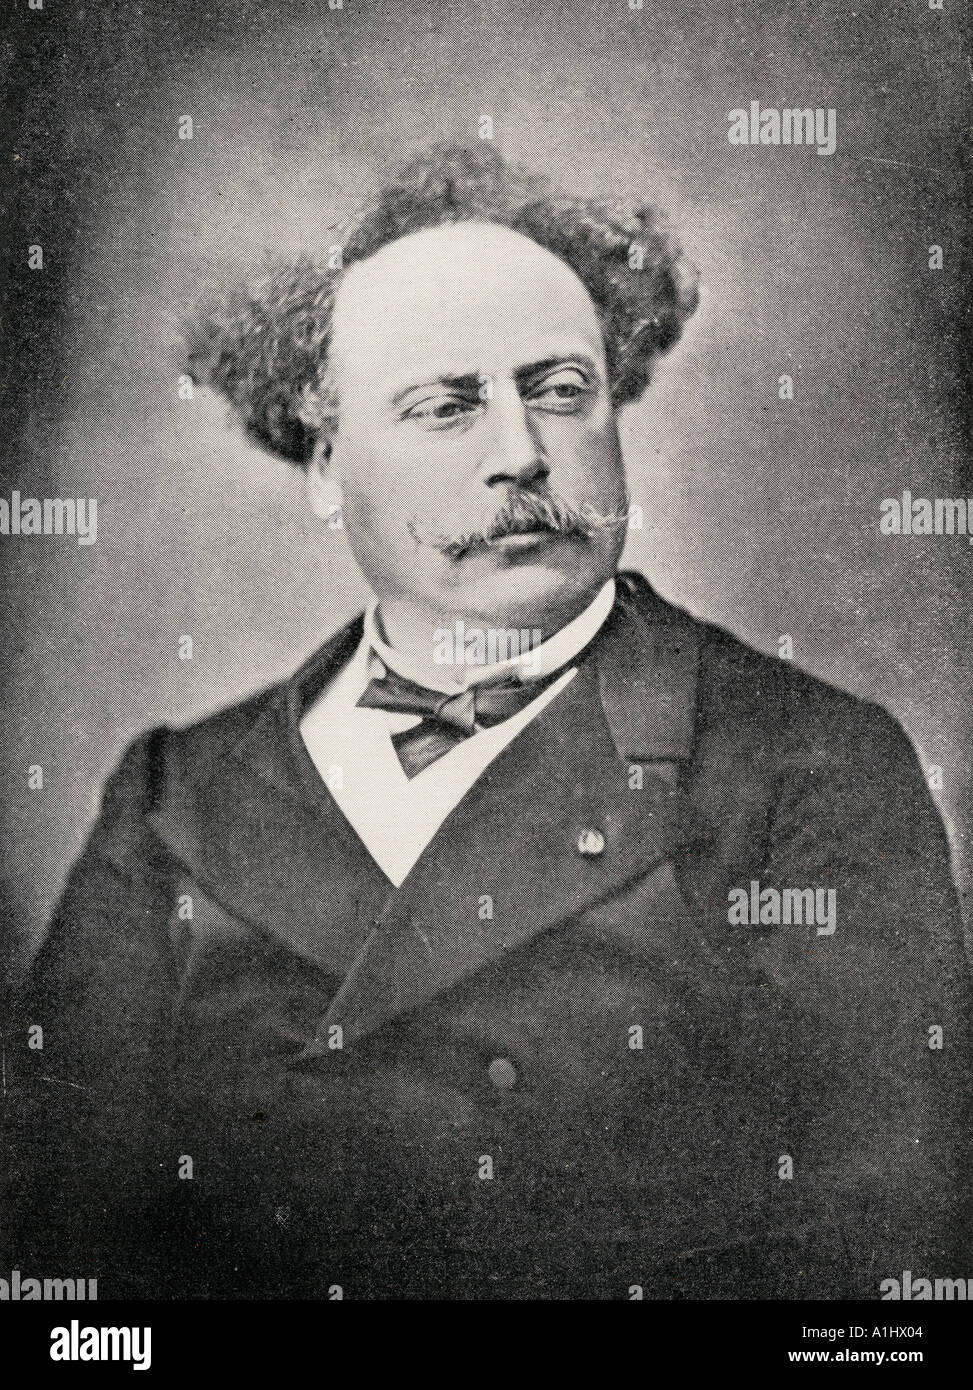 Alexandre Dumas Le Jeune, 1824 - 1895. L'auteur français, fils de Dumas père. Banque D'Images